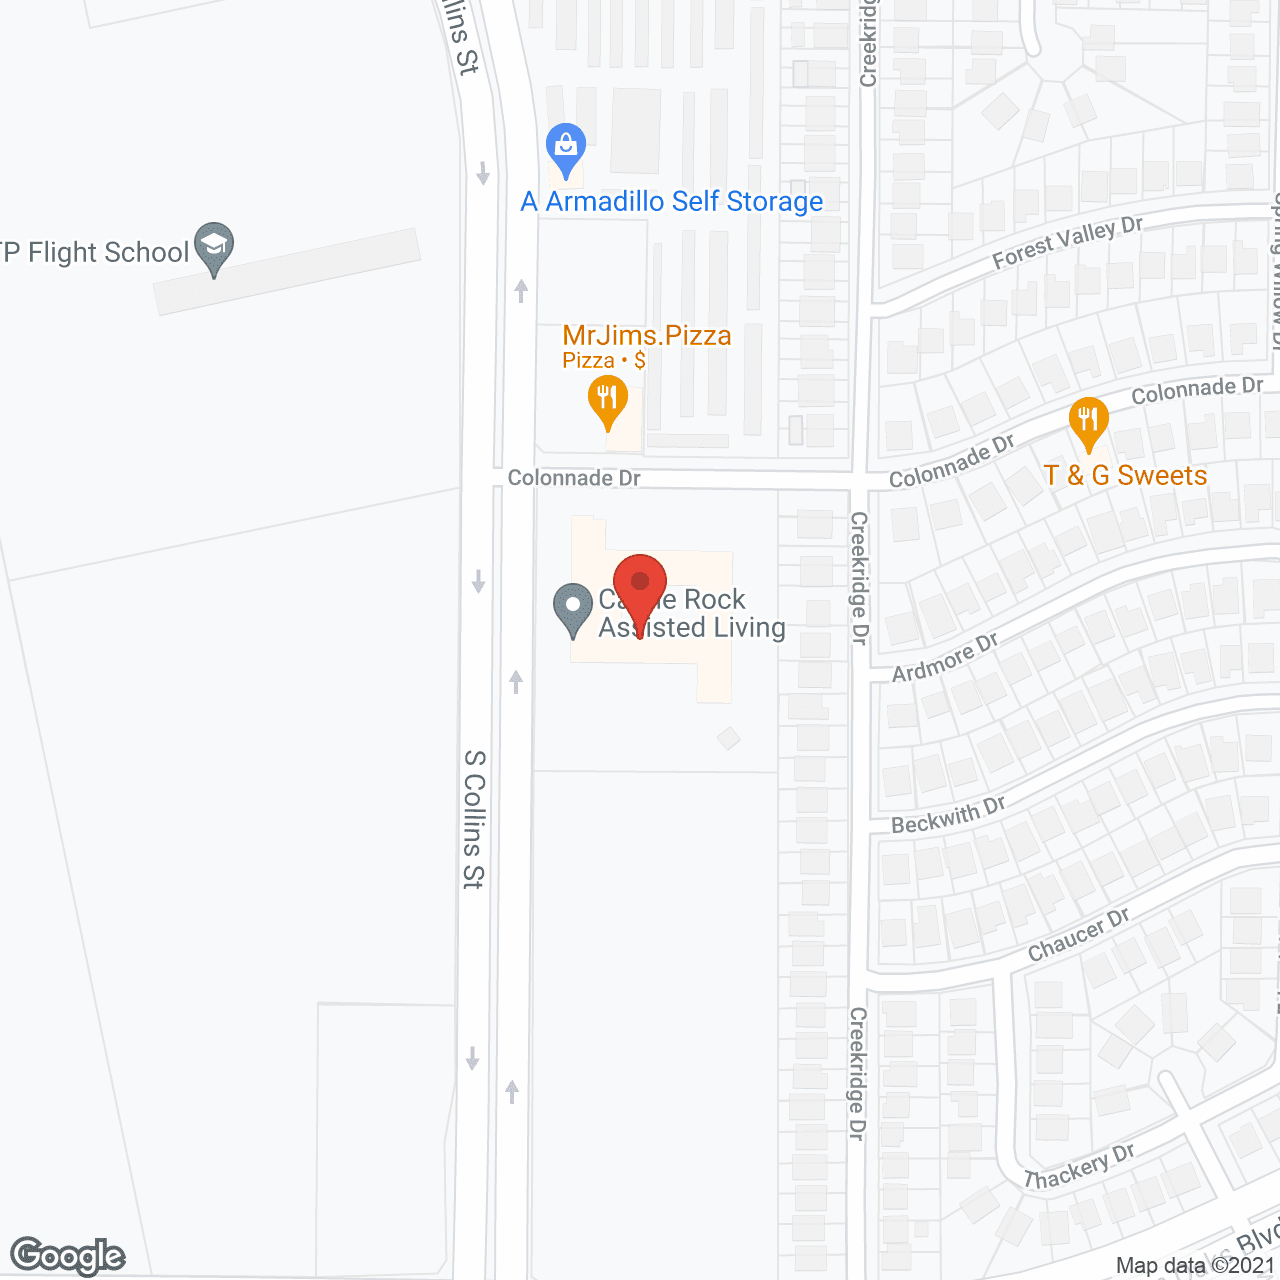 A Castle Rock Community in google map